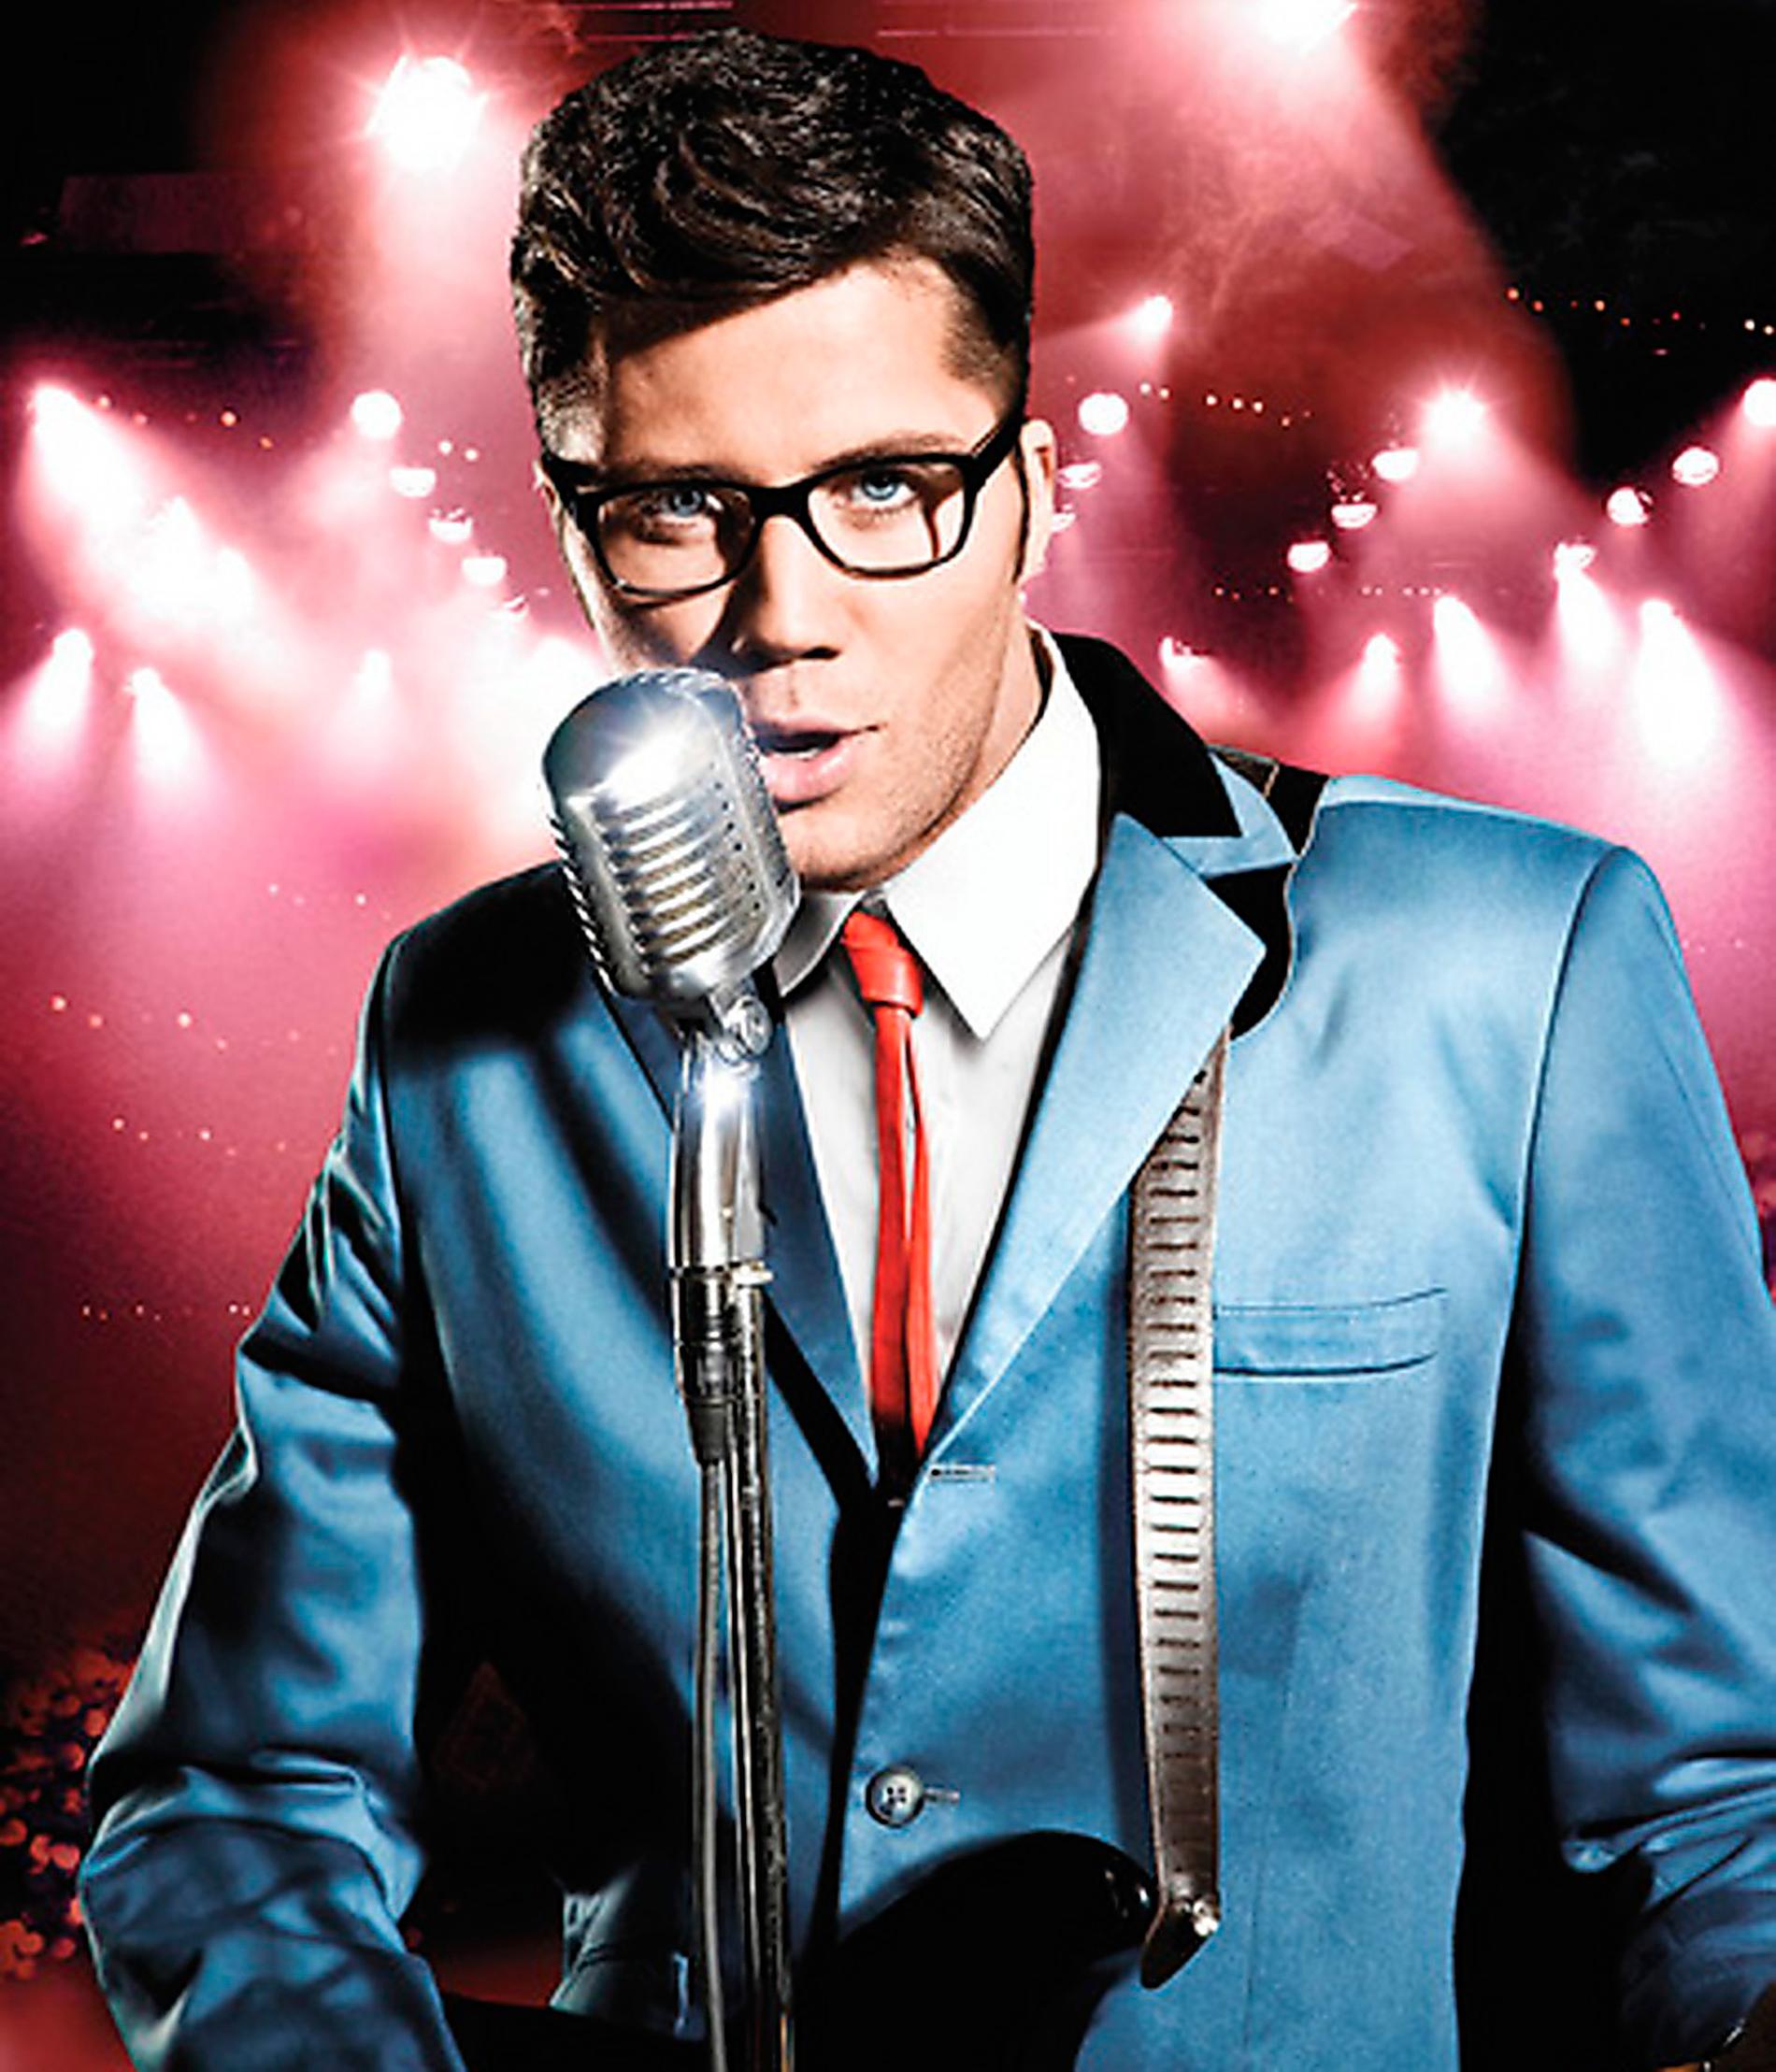 2009 Gör rollen som Buddy Holly i musikalen på Göta Lejon.